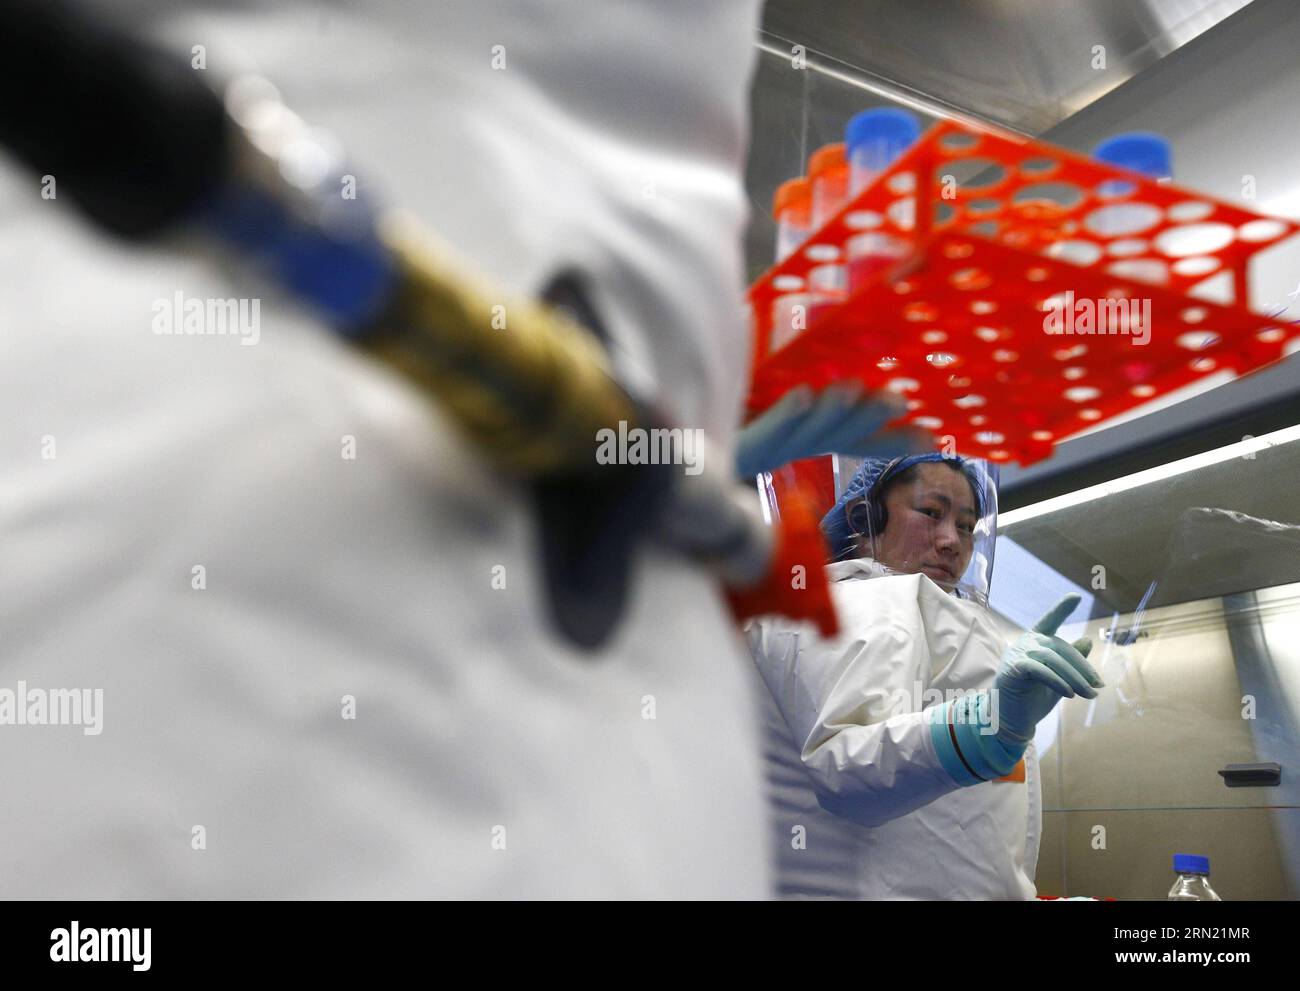 150131 -- WUHAN, Un ricercatore partecipa a un'esercitazione nel laboratorio appena completato a Wuhan, capitale della provincia di Hubei della Cina centrale, 30 gennaio 2015. La Cina ha completato il suo primo laboratorio di biosicurezza di alto livello con sede a Wuhan sabato a Wuhan dopo più di un decennio di costruzione. Il laboratorio sarà utilizzato per studiare i patogeni di classe quattro P4, che si riferisce ai virus più virulenti che presentano un alto rischio di infezioni da persona a persona trasmesse da aerosol. wyo CHINA-WUHAN-BIOSAFETY LAB CN YinxGang PUBLICATIONxNOTxINxCHN Foto Stock